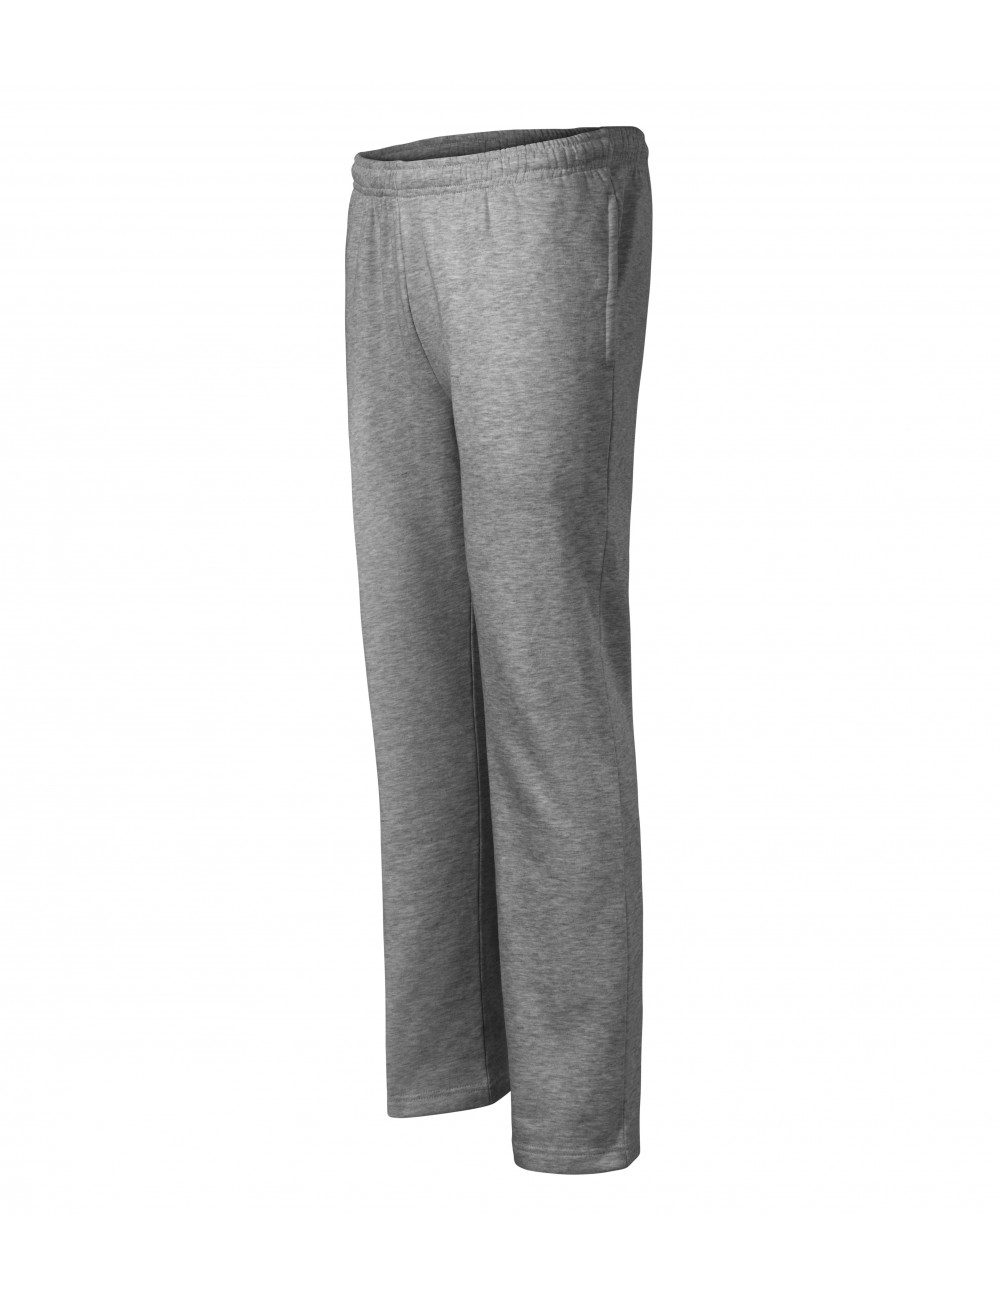 Sweatpants for men/children comfort 607 dark gray melange Adler Malfini